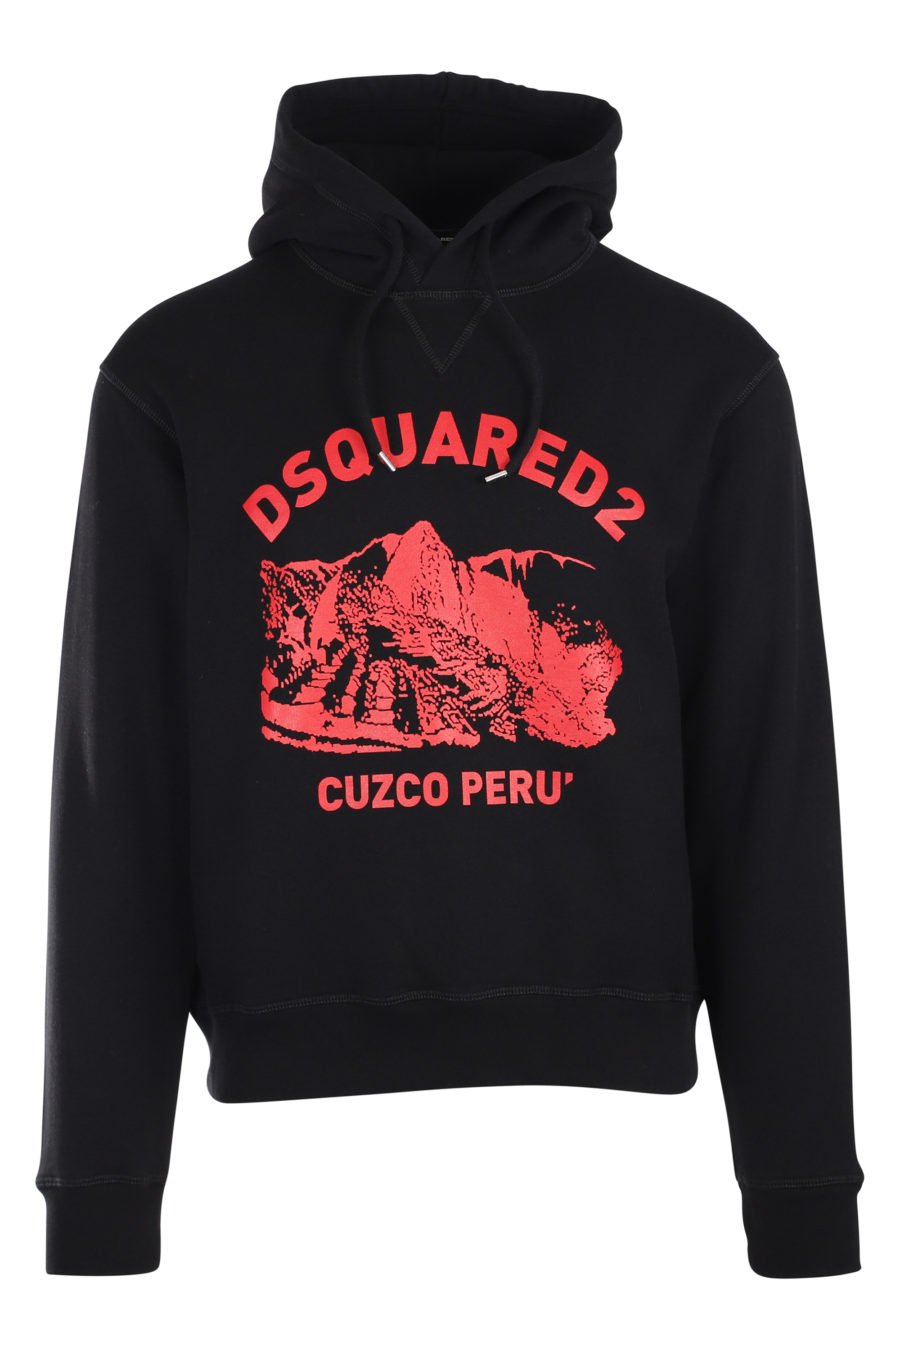 Sudadera negra con capucha y logo "cuzco peru" - IMG 9873